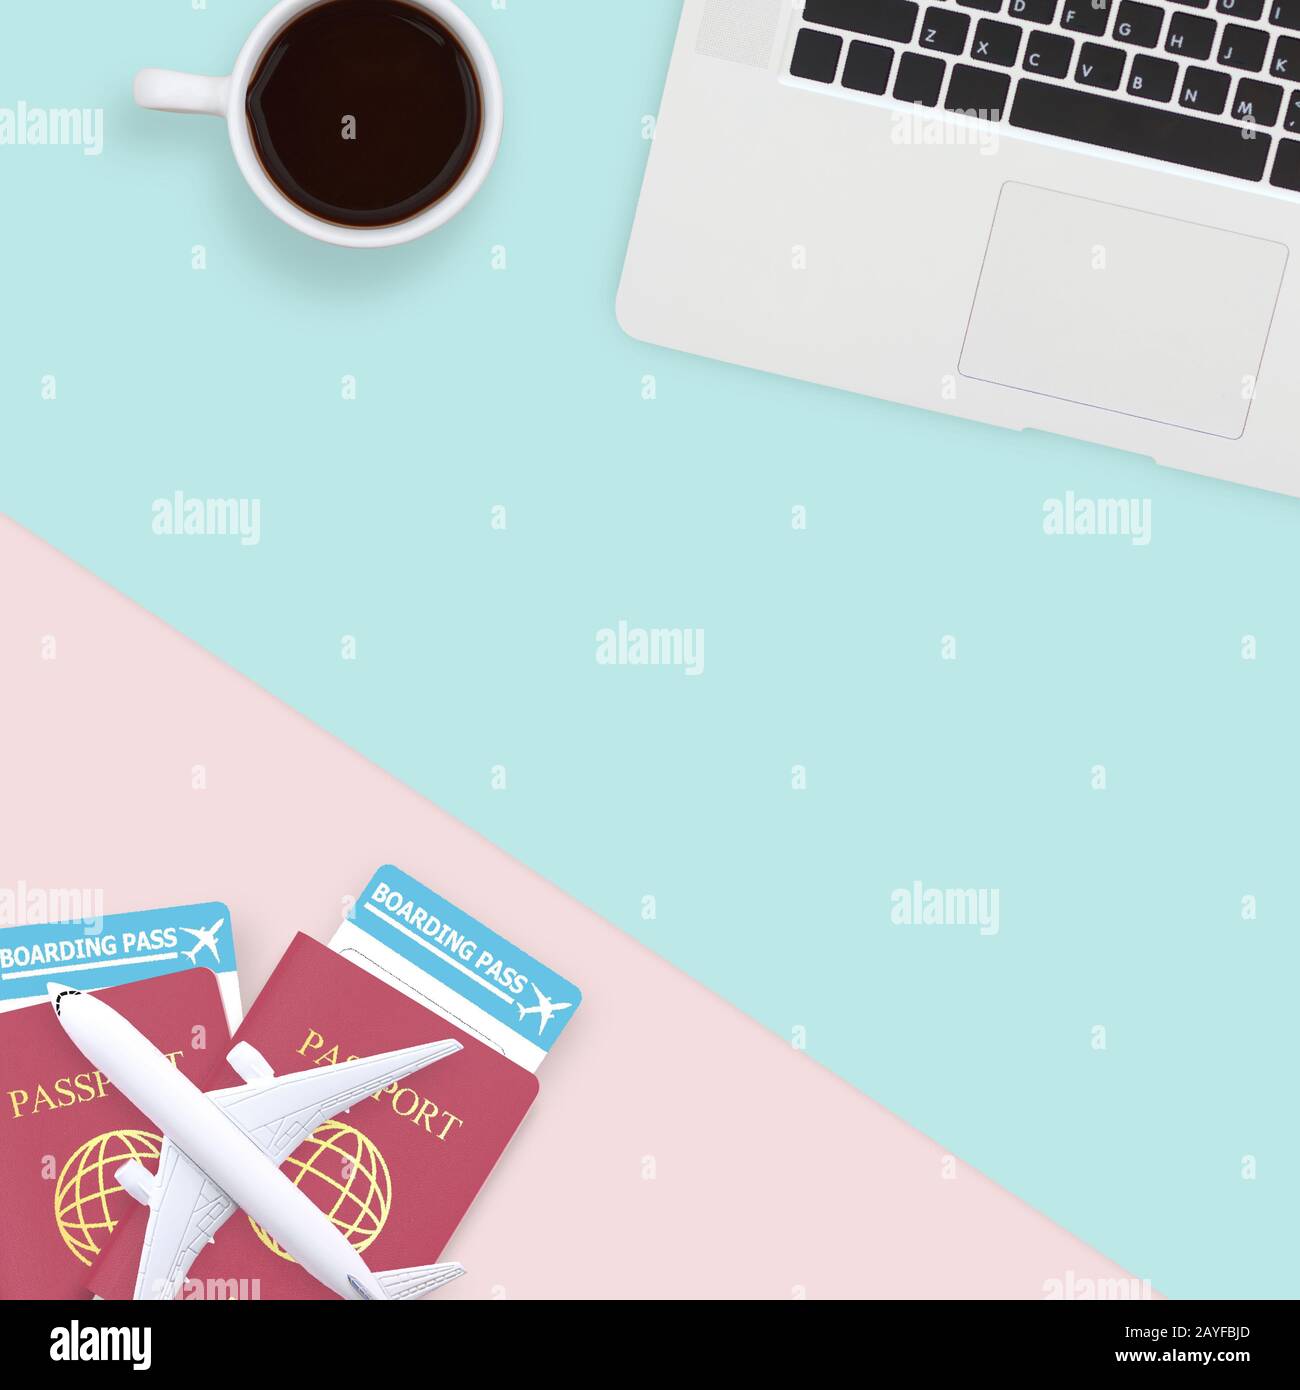 Flacher Reisepass, weißes Flugzeugmodell und Computerlaptop auf pastellblauem und pinkfarbenem Hintergrund mit Kopierfläche. Reise-, Visa- und Urlaubskonz Stockfoto